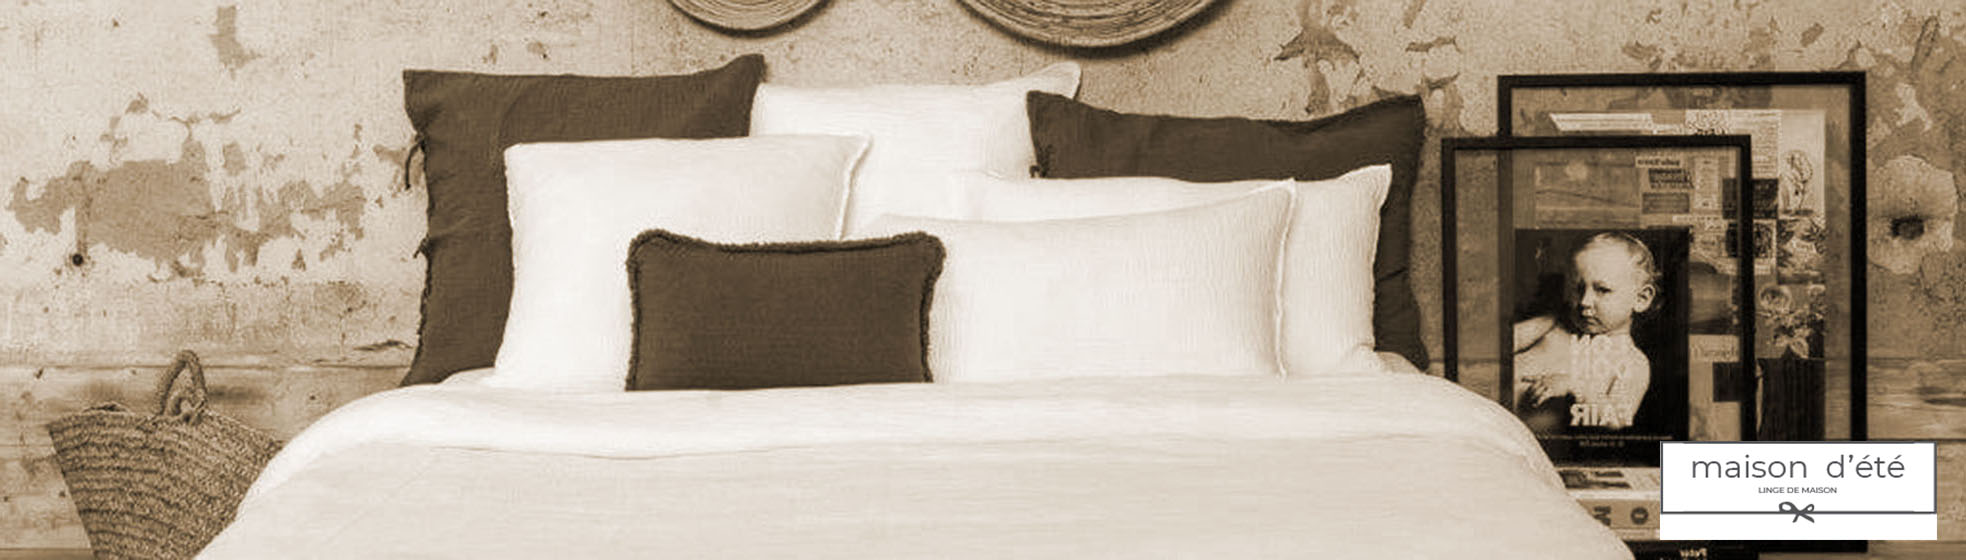 taie oreiller linge de lit haut de gamme Paris (75001)